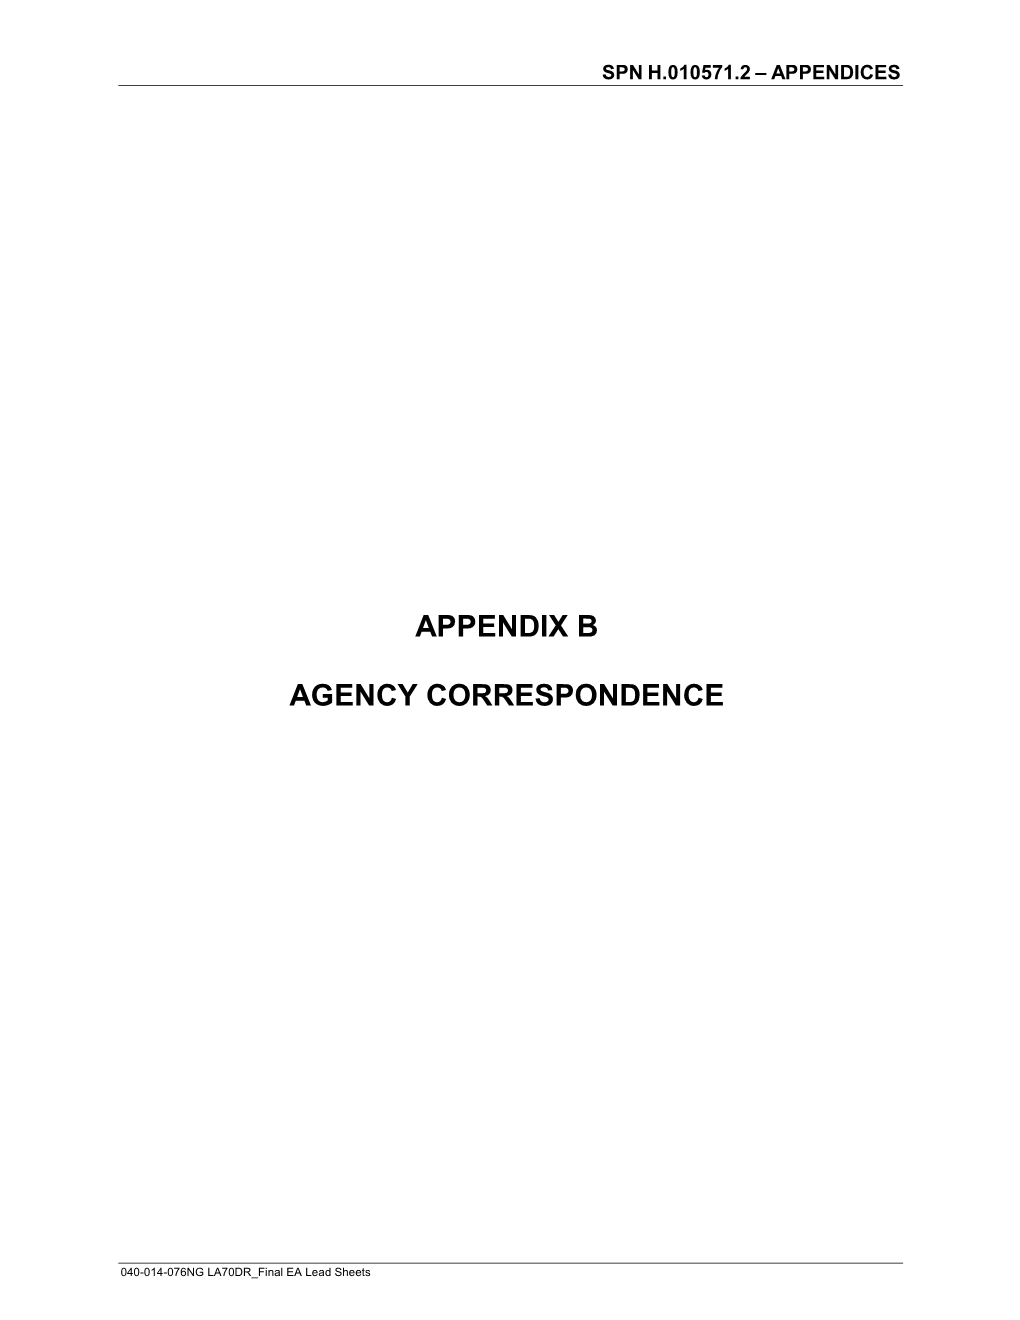 Appendix B Agency Correspondence